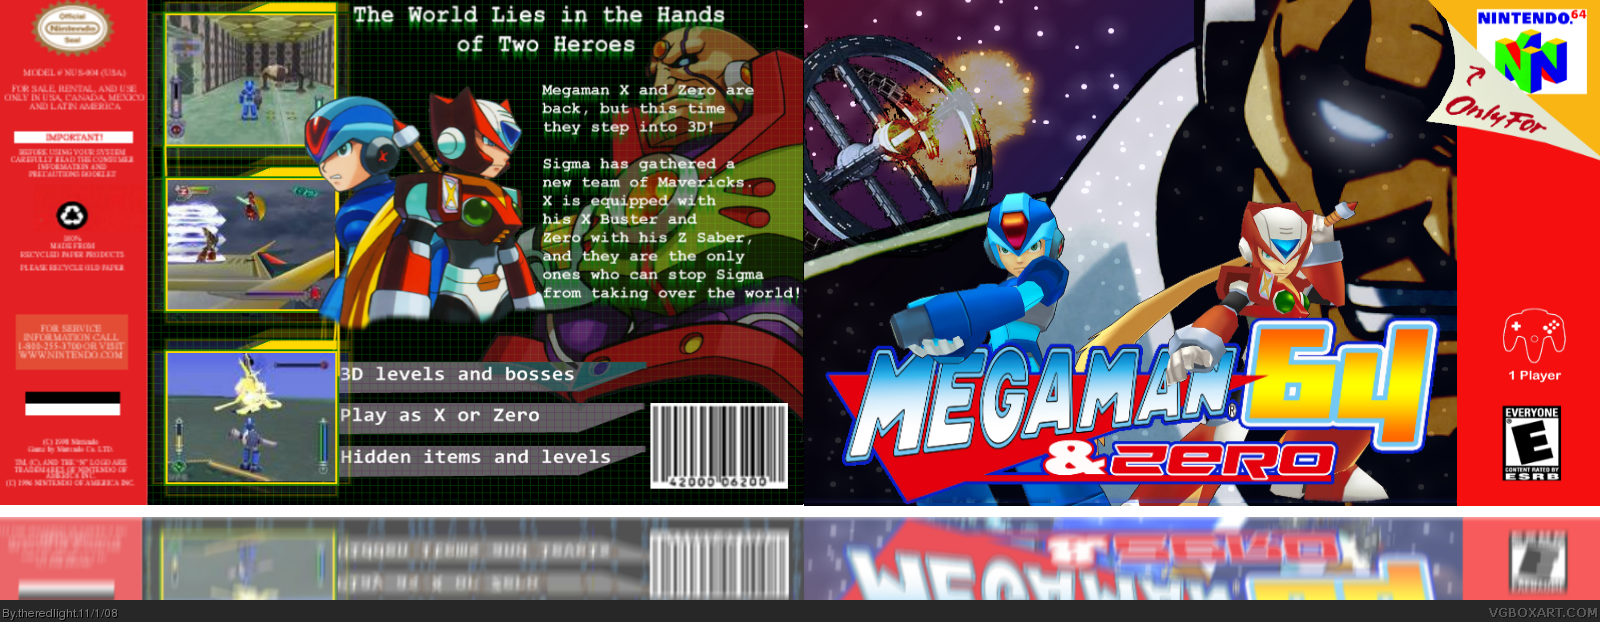 MegaMan 64 -X and Zero box cover